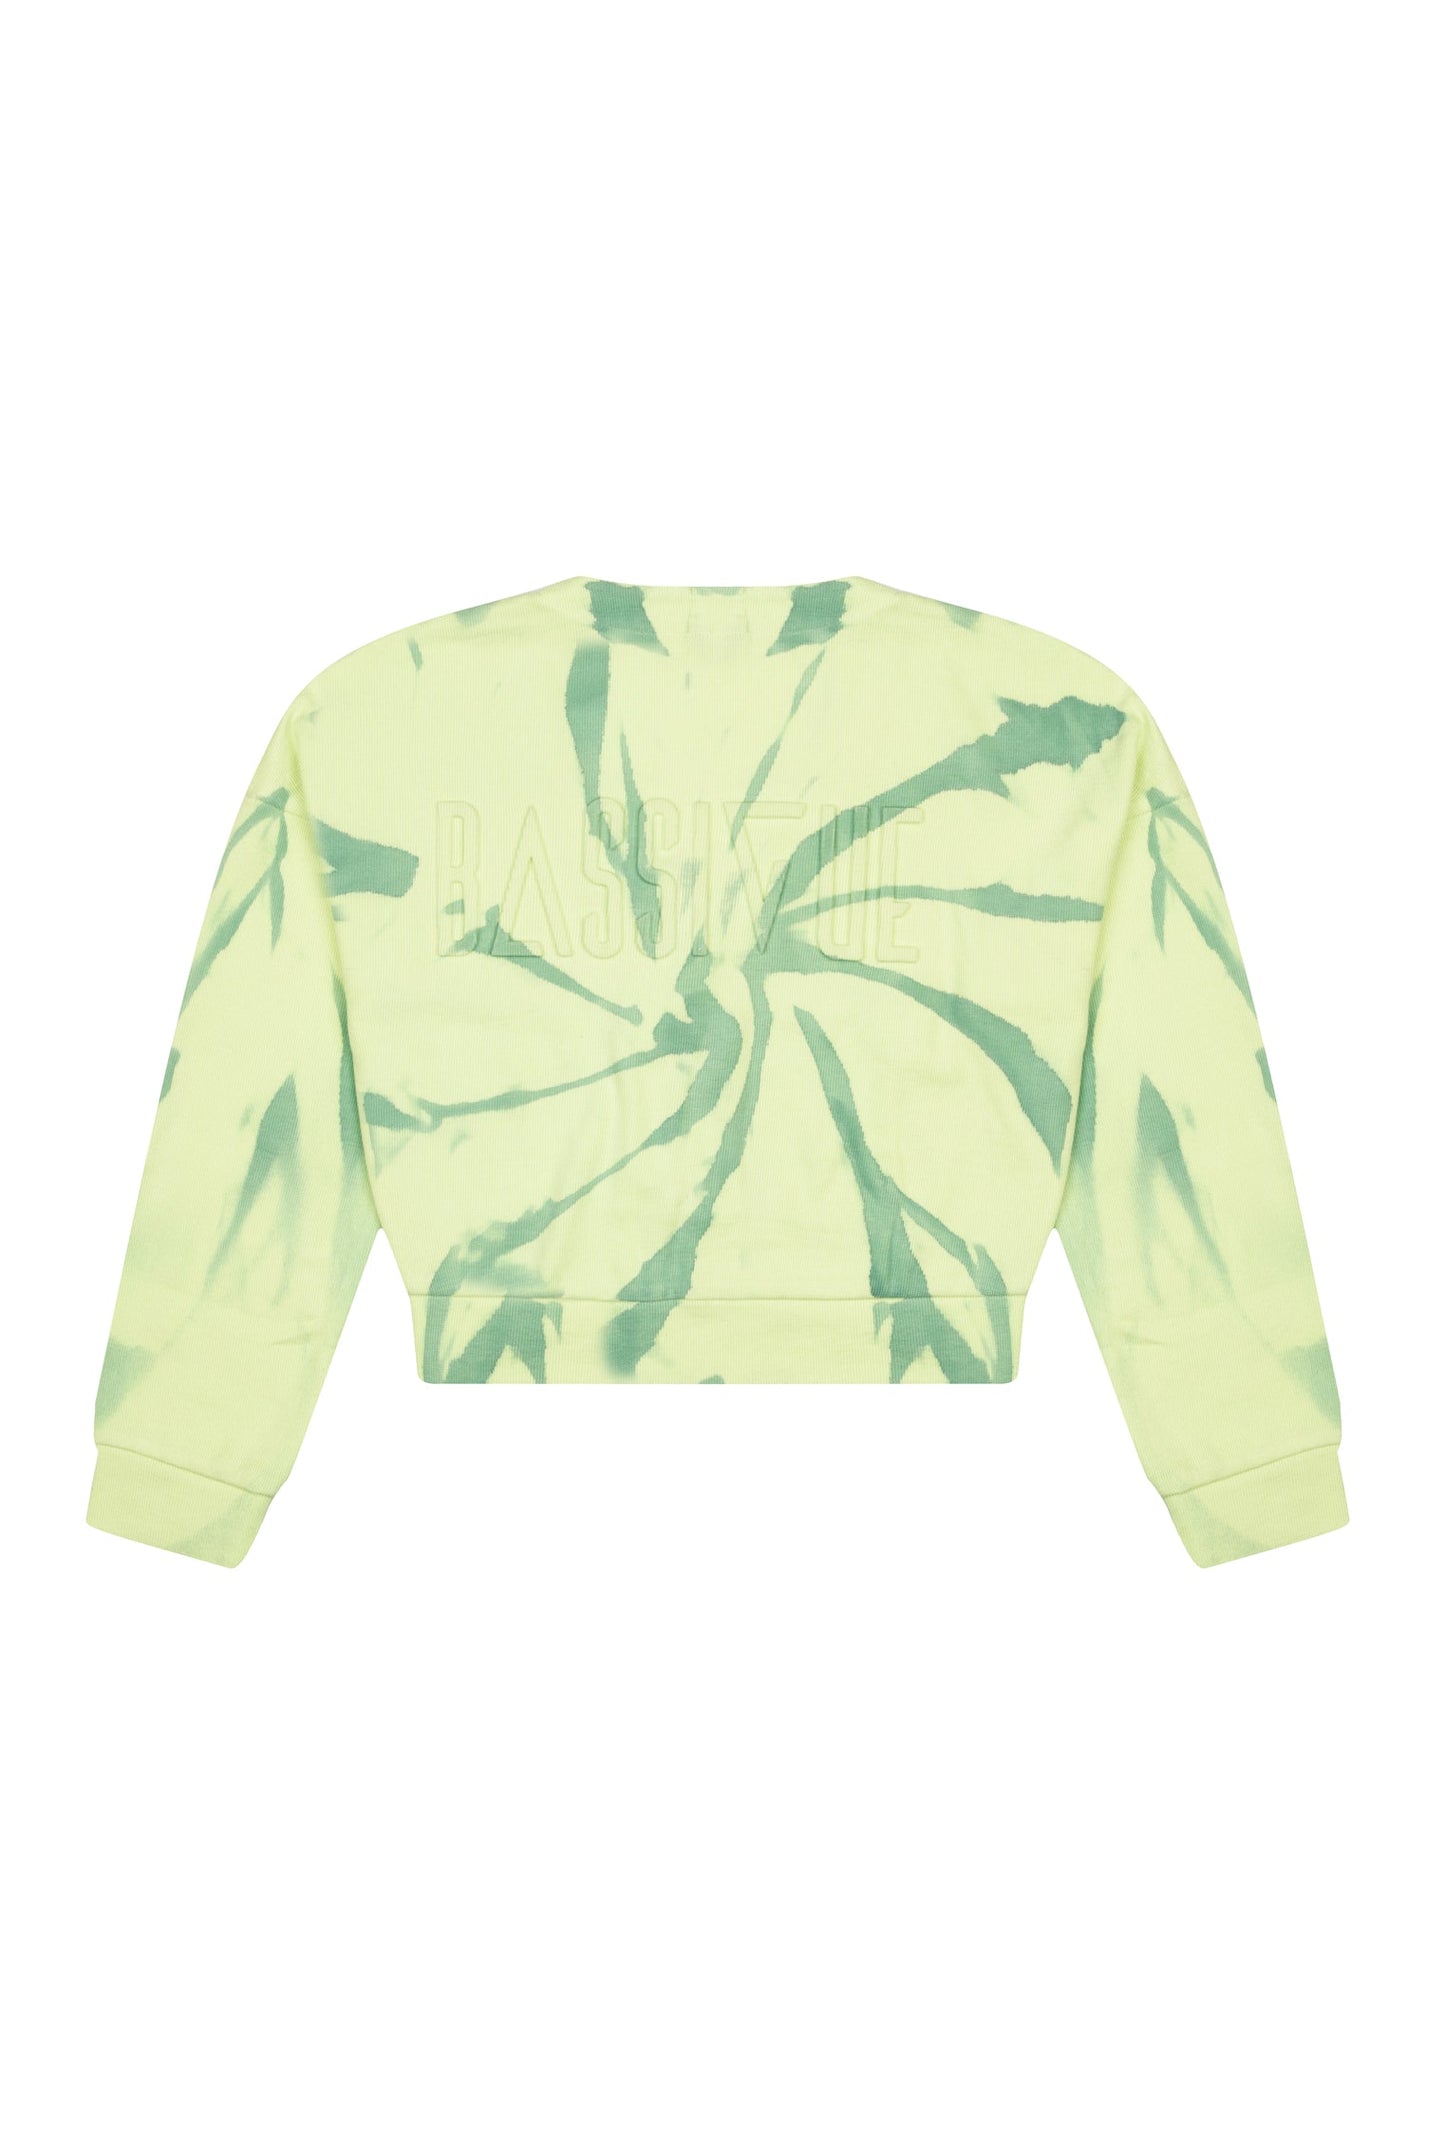 İğne Detaylı Sweatshirt - Açık Yeşili/Sarı